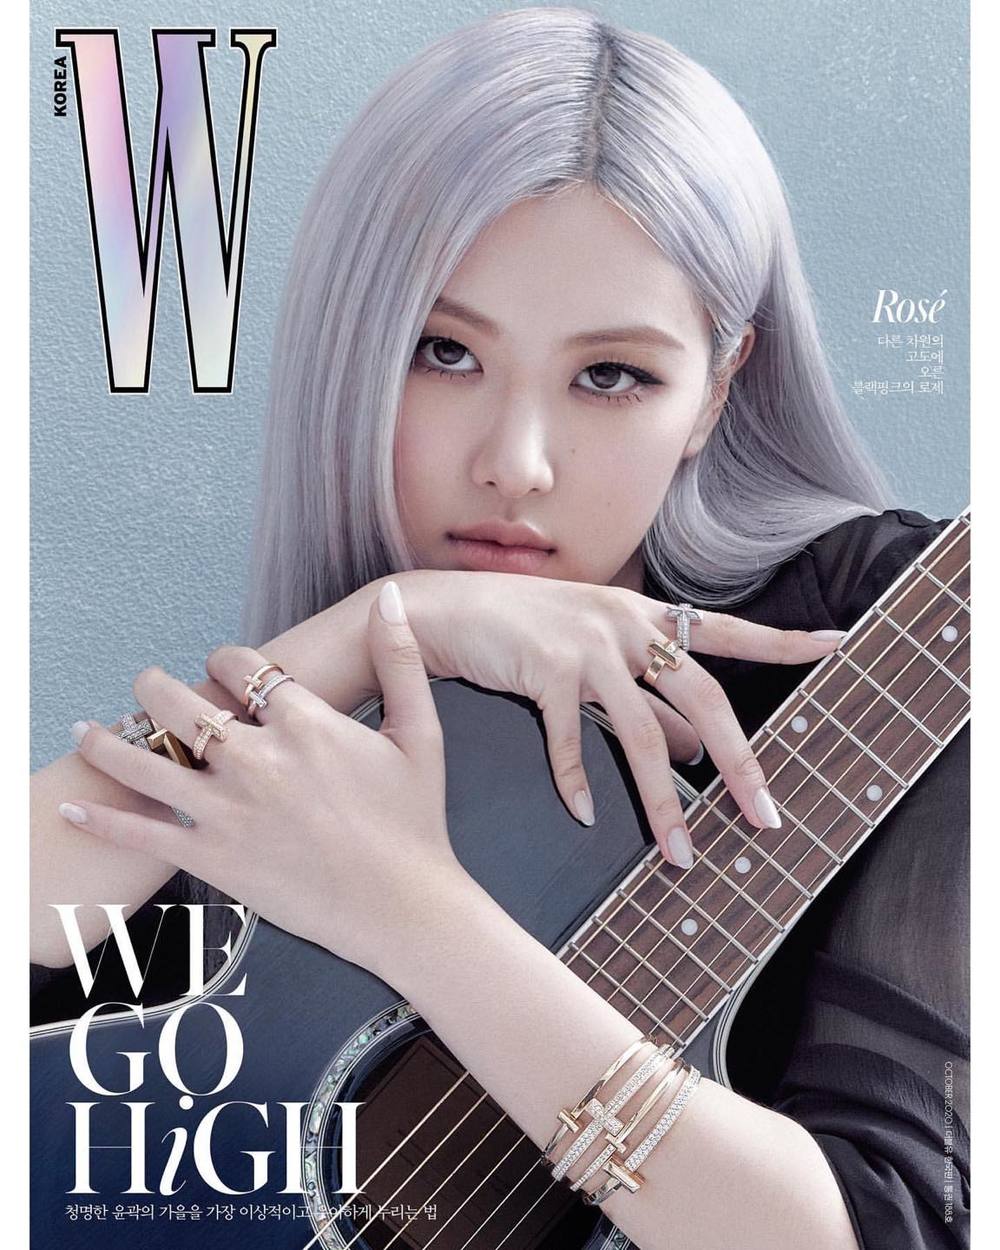 
Rosé sẽ xuất hiện trên trang bìa tạp chí W Korea. Ảnh: W Korea